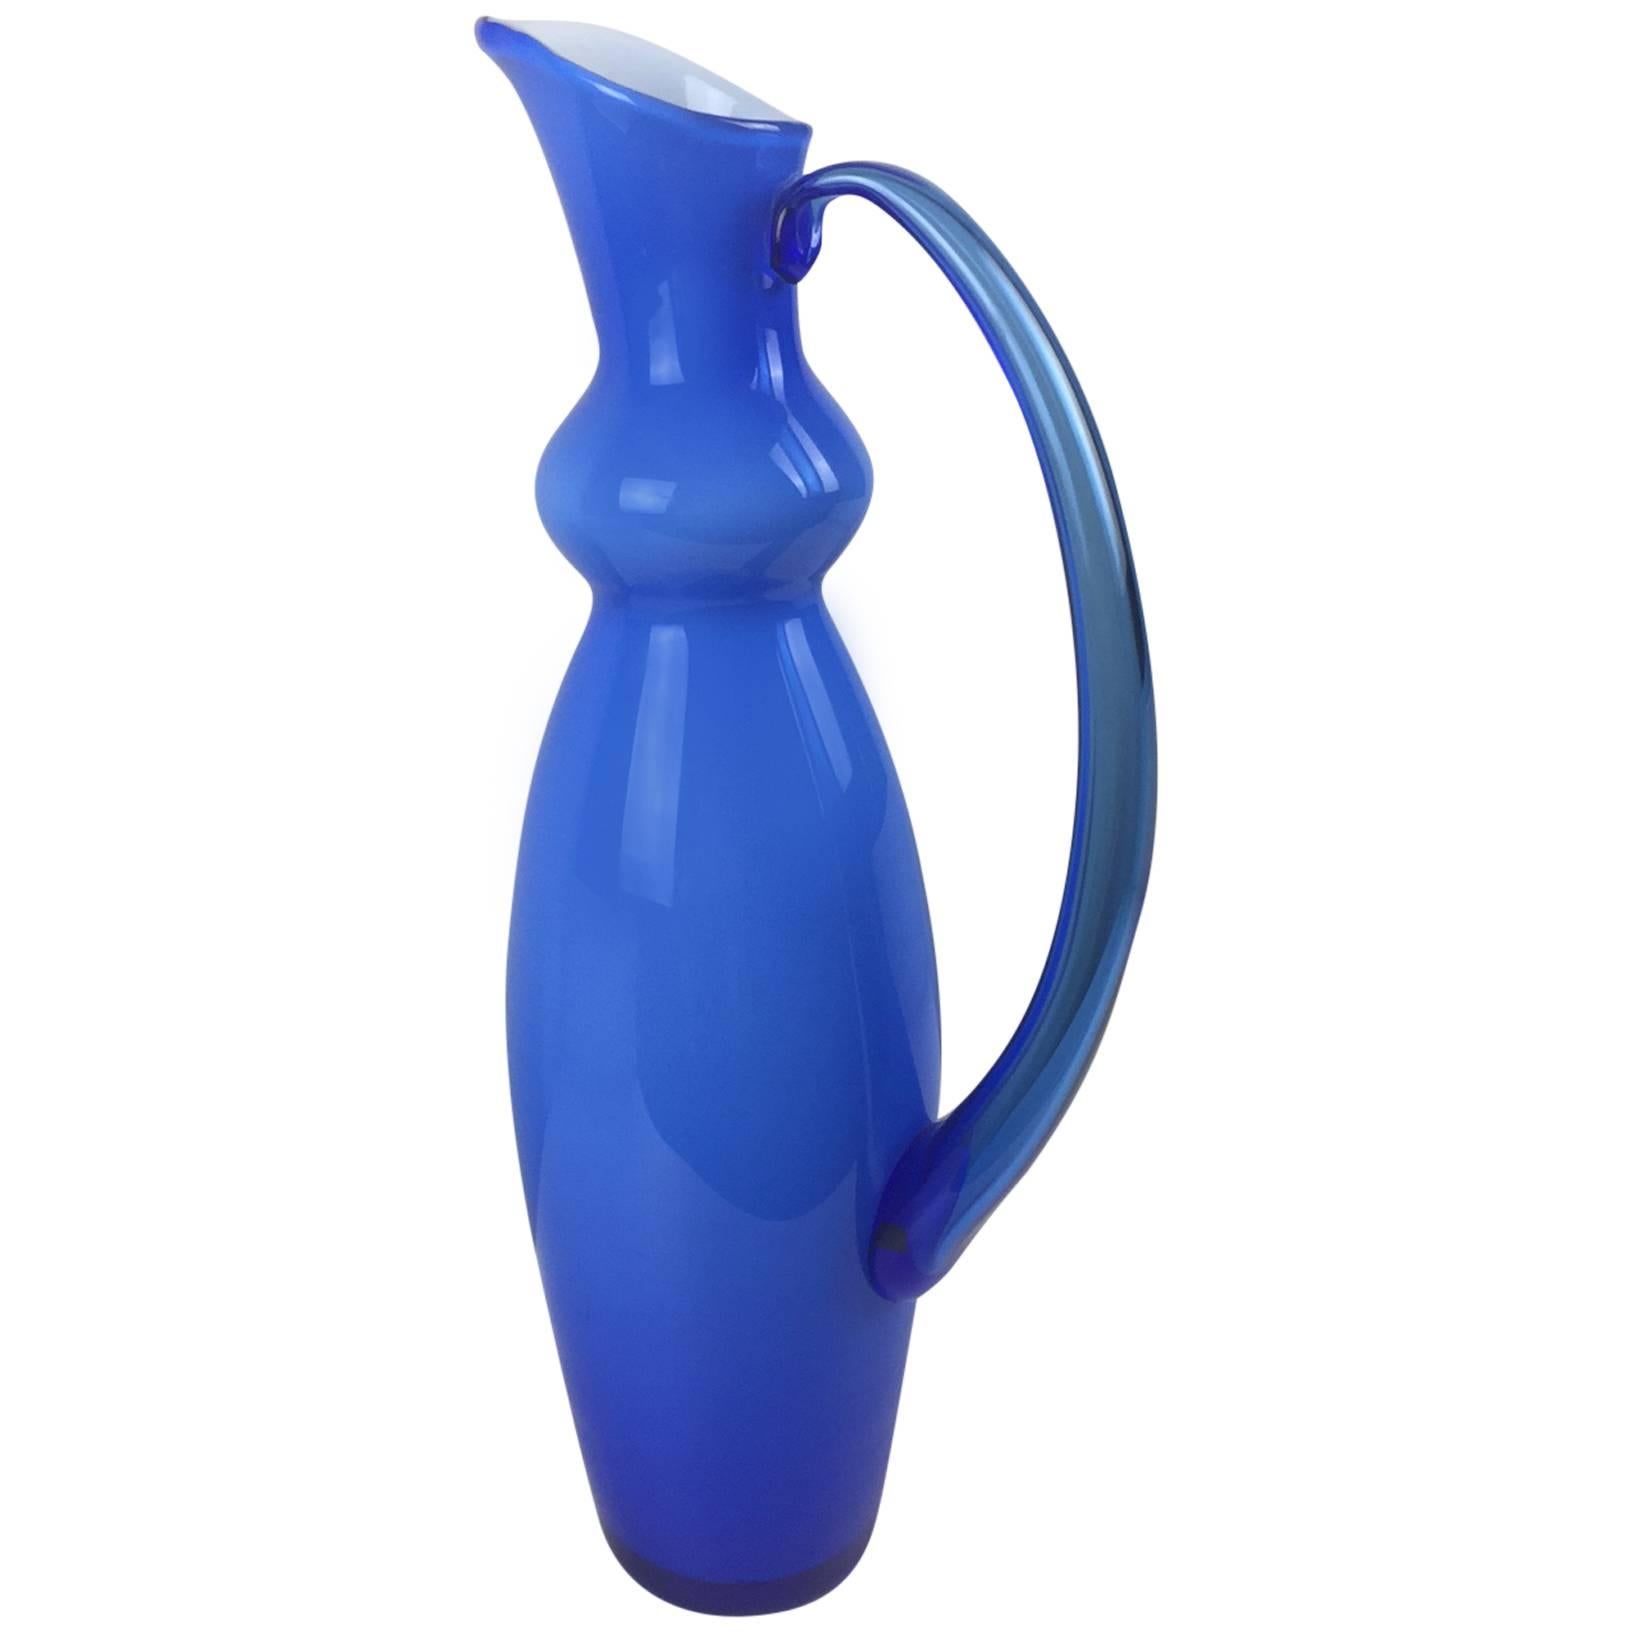 Brilliant Blue Orrefors Vase or Pitcher